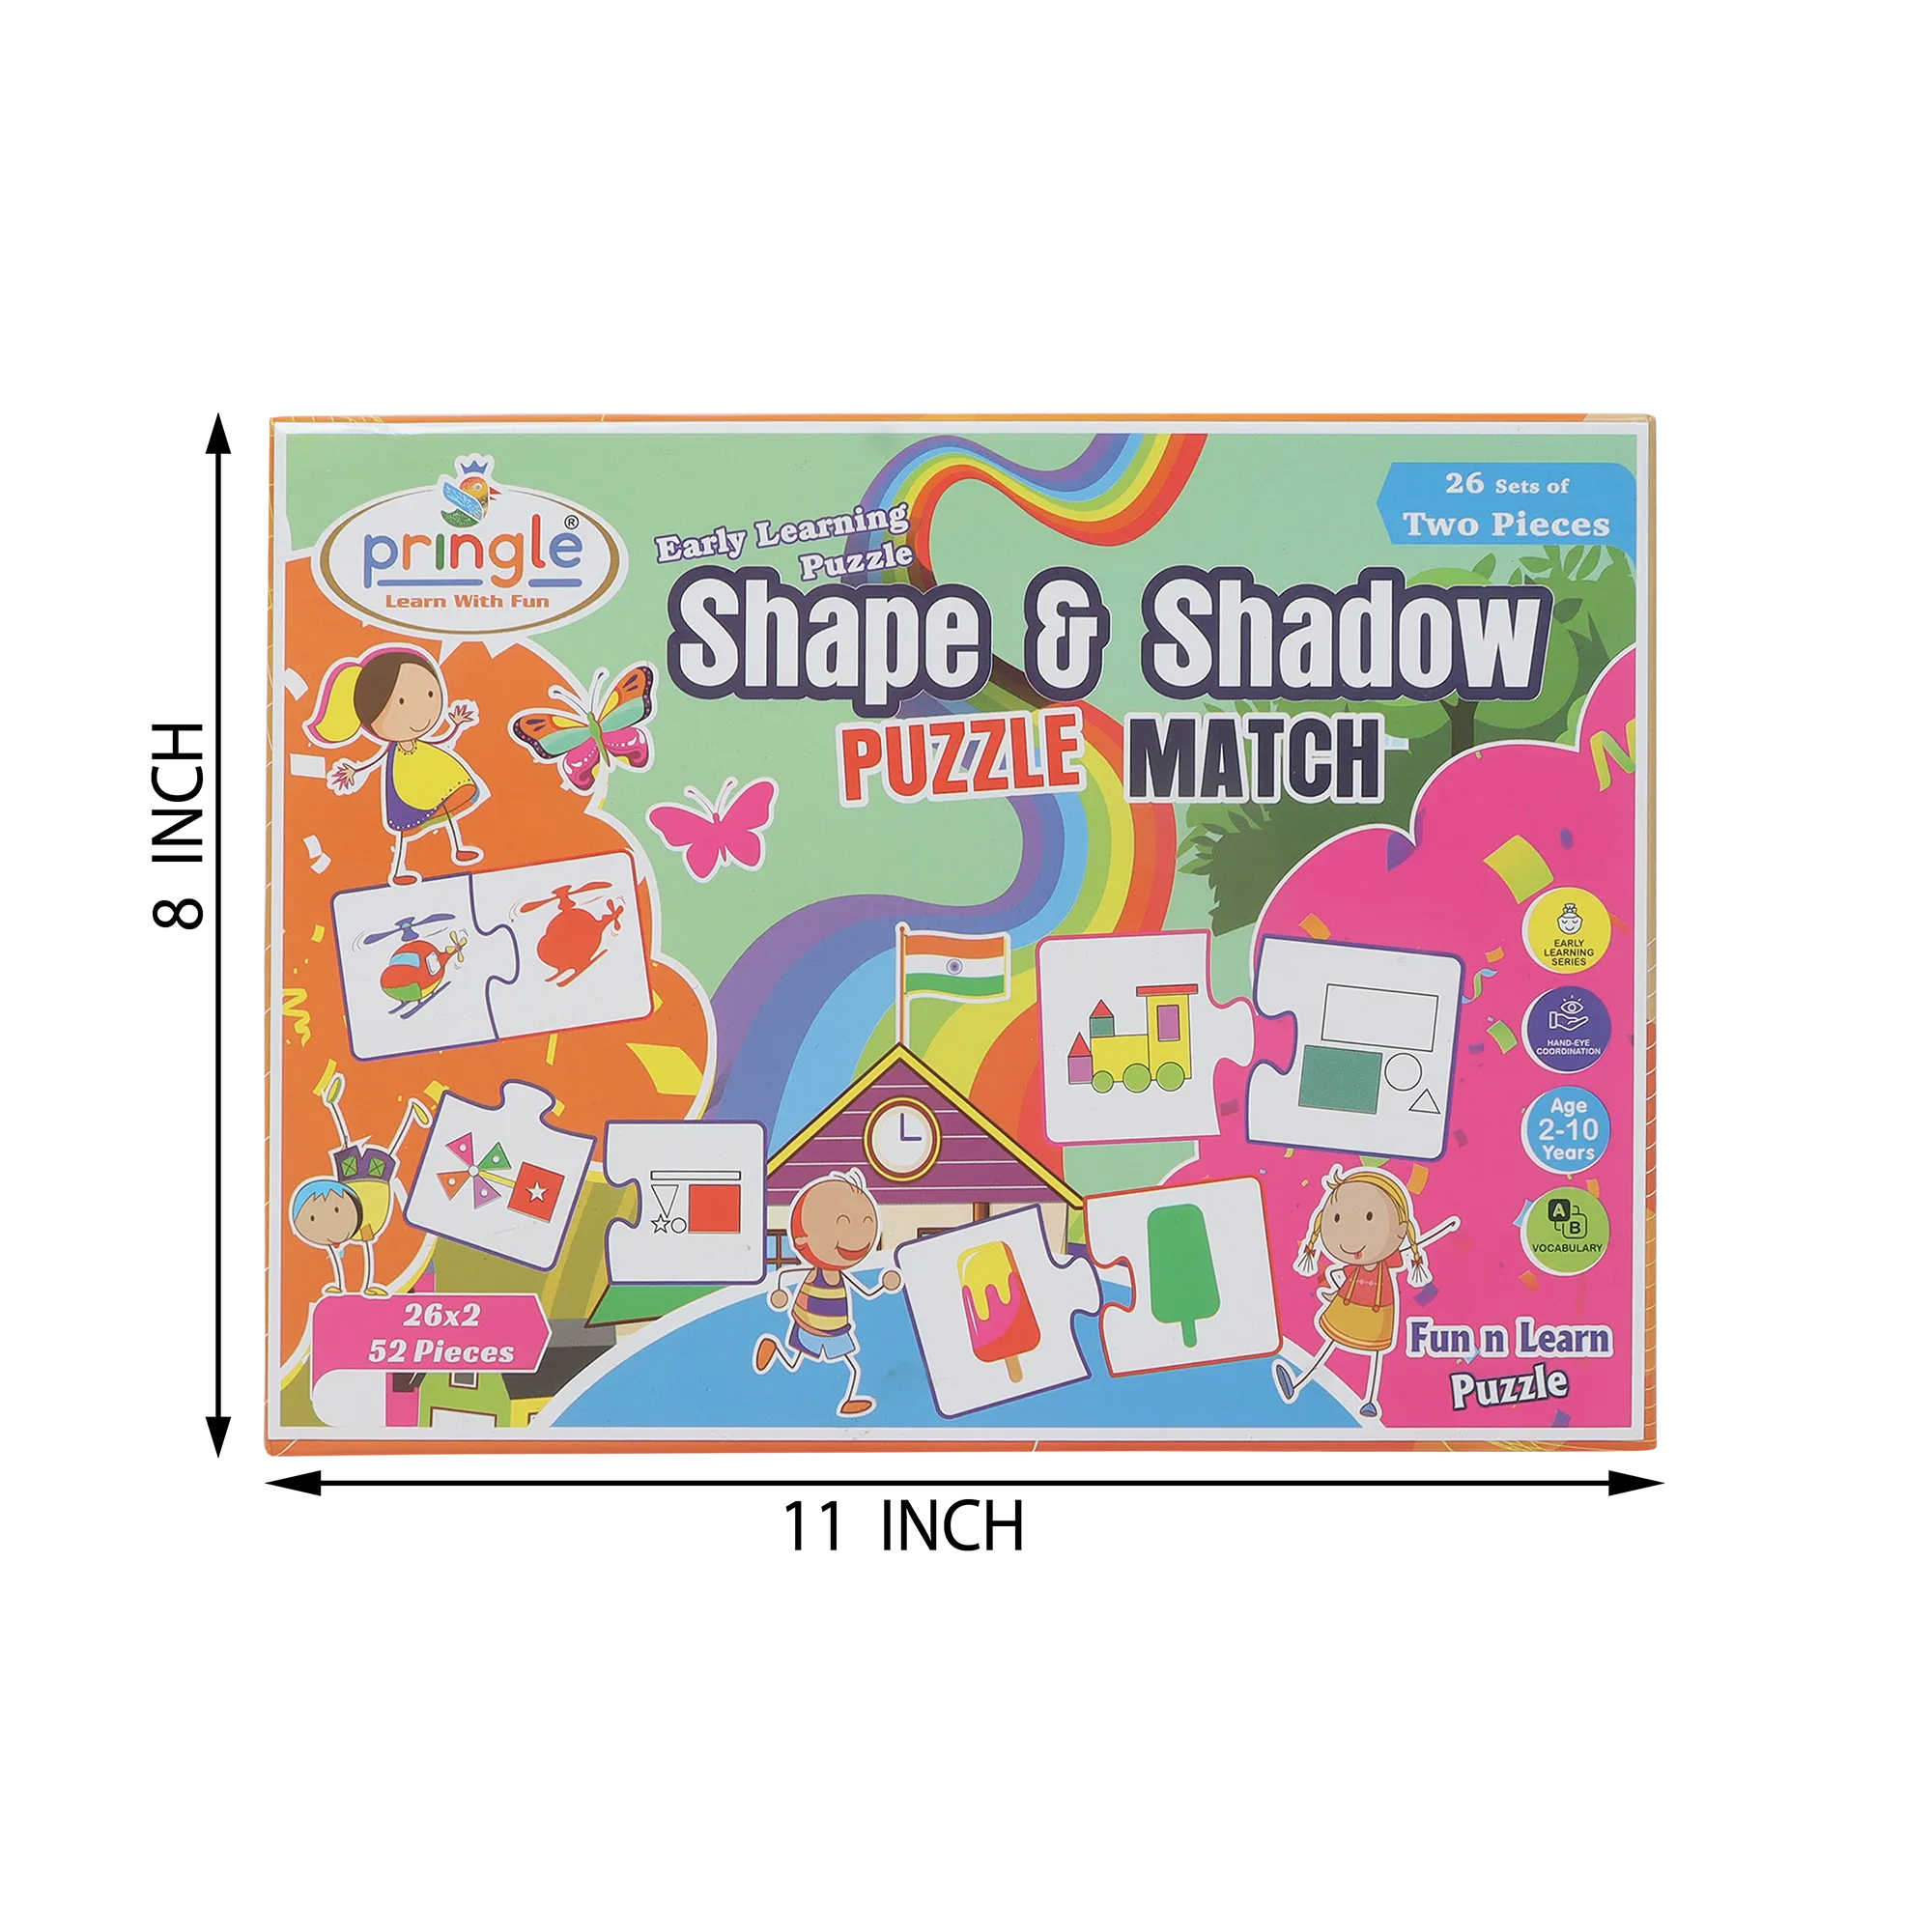 PR29 Shape & Shadow Puzzle Match